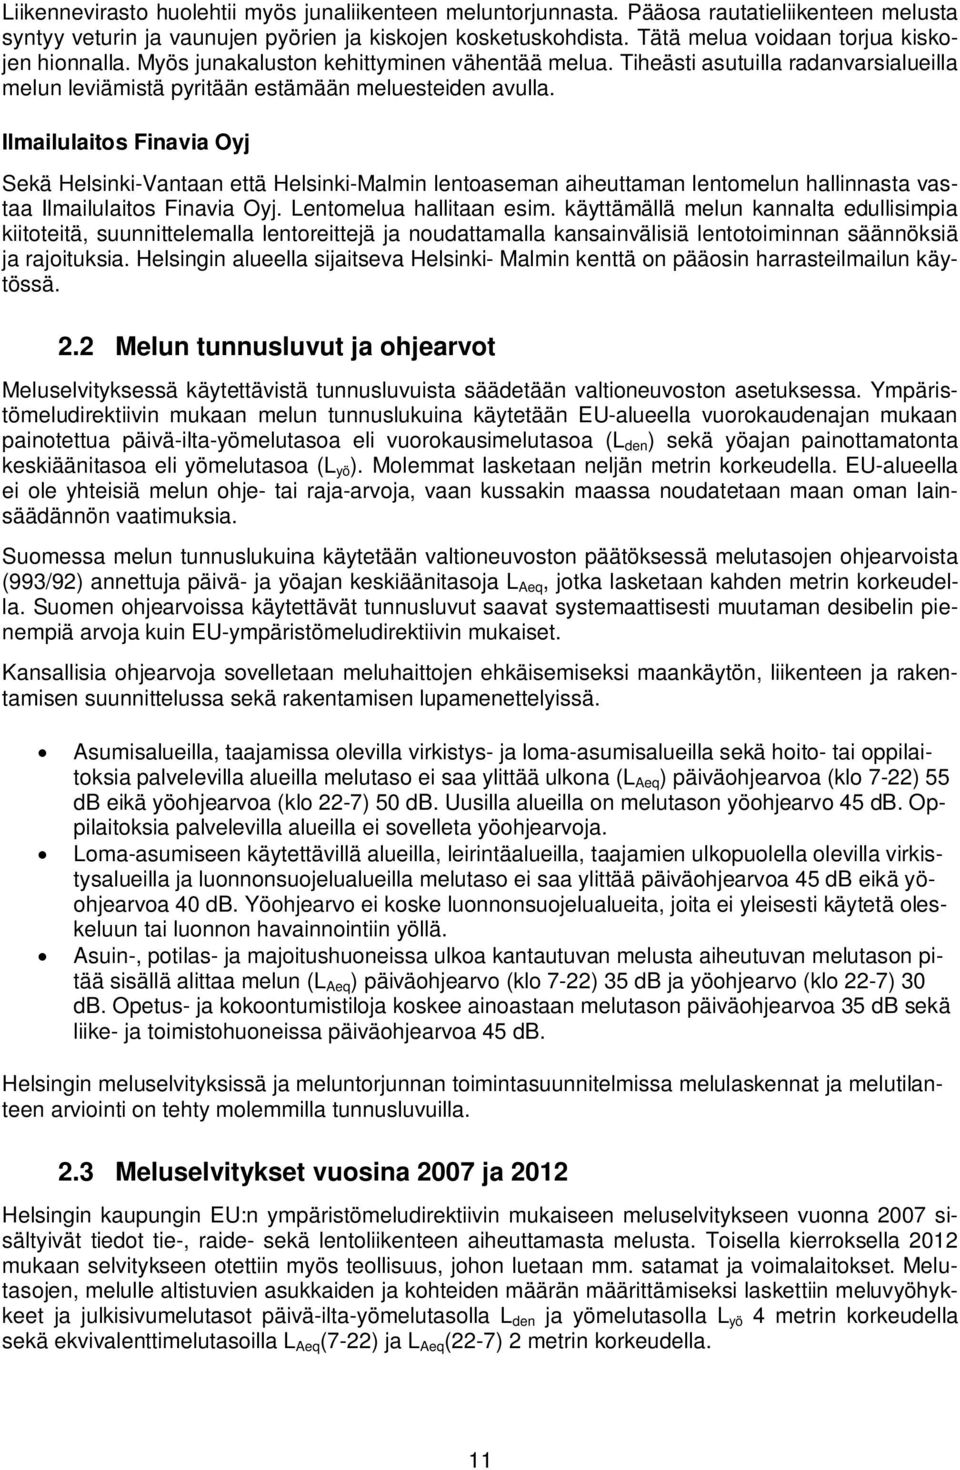 Ilmailulaitos Finavia Oyj Sekä Helsinki-Vantaan että Helsinki-Malmin lentoaseman aiheuttaman lentomelun hallinnasta vastaa Ilmailulaitos Finavia Oyj. Lentomelua hallitaan esim.